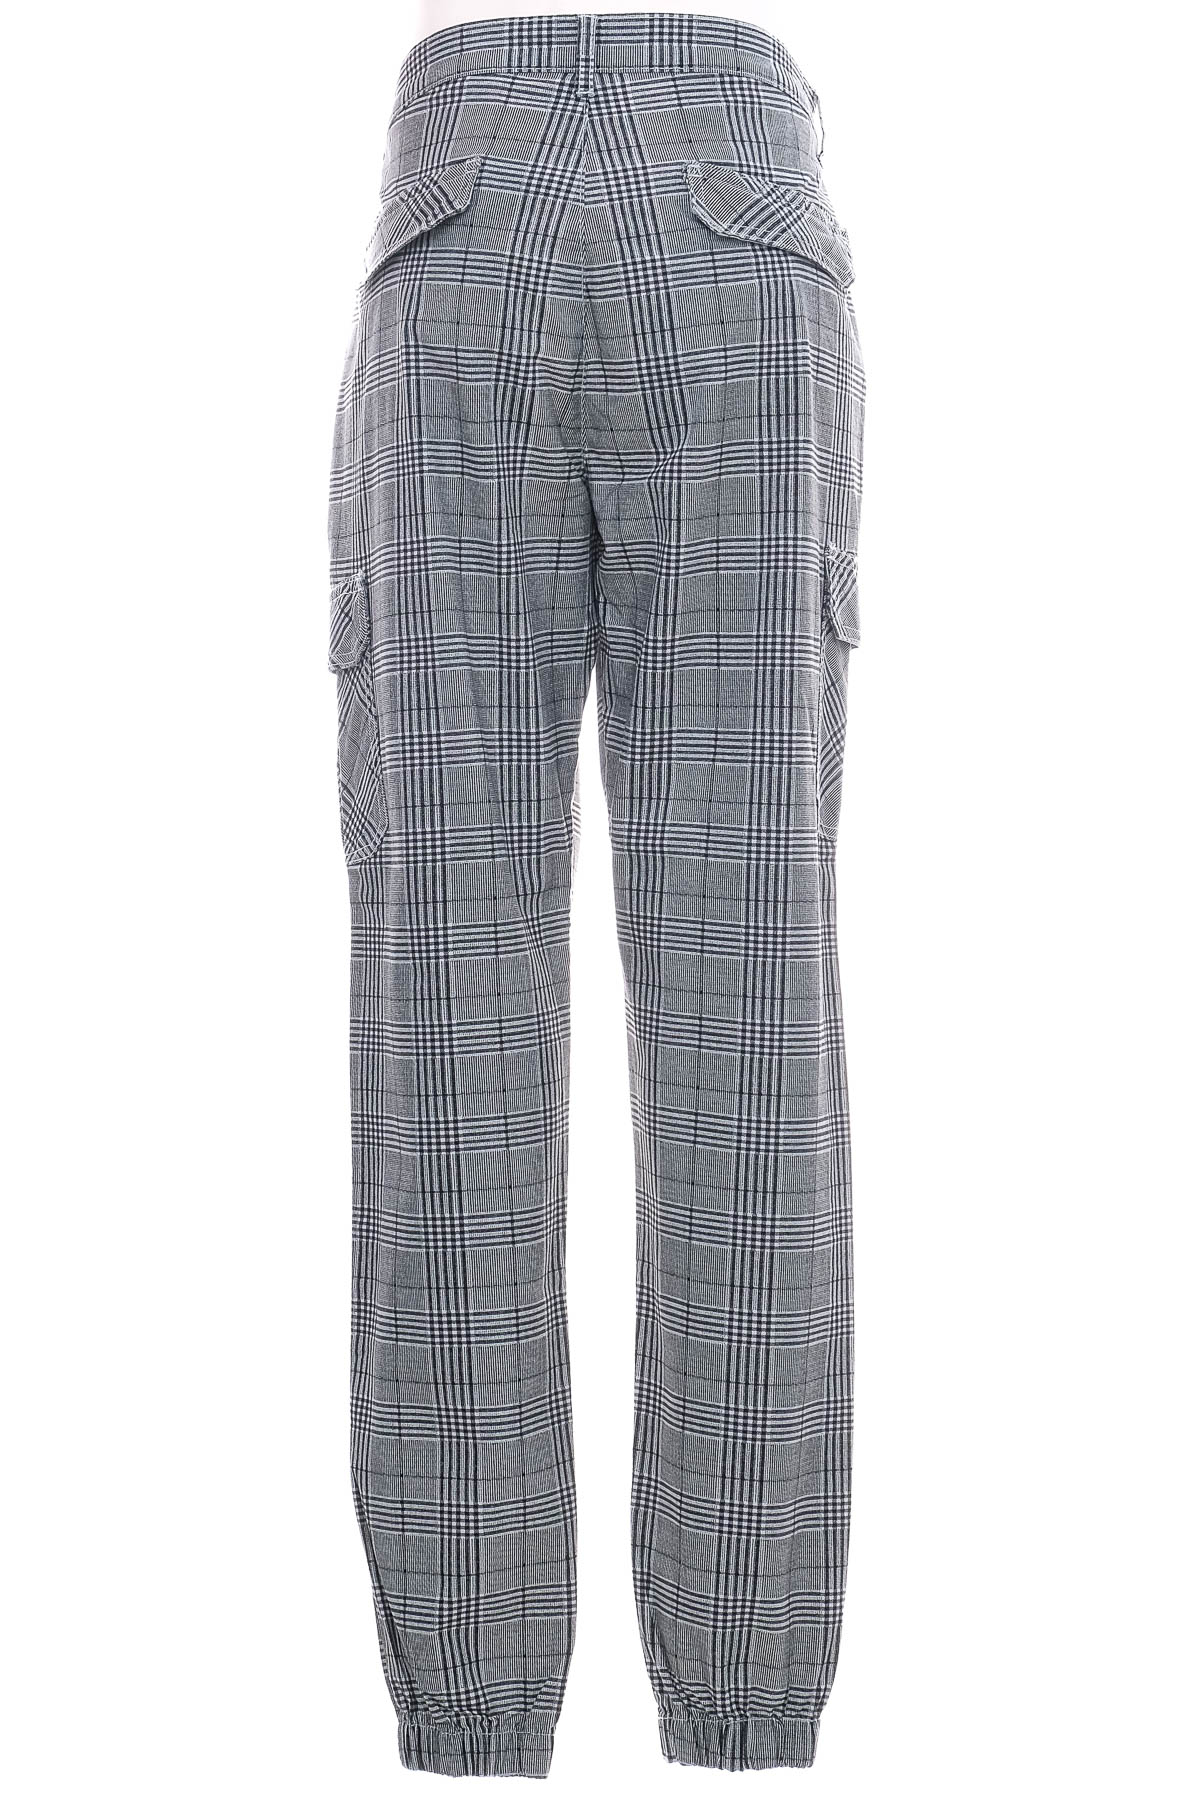 Pantalon pentru bărbați - URBAN CLASSICS - 1